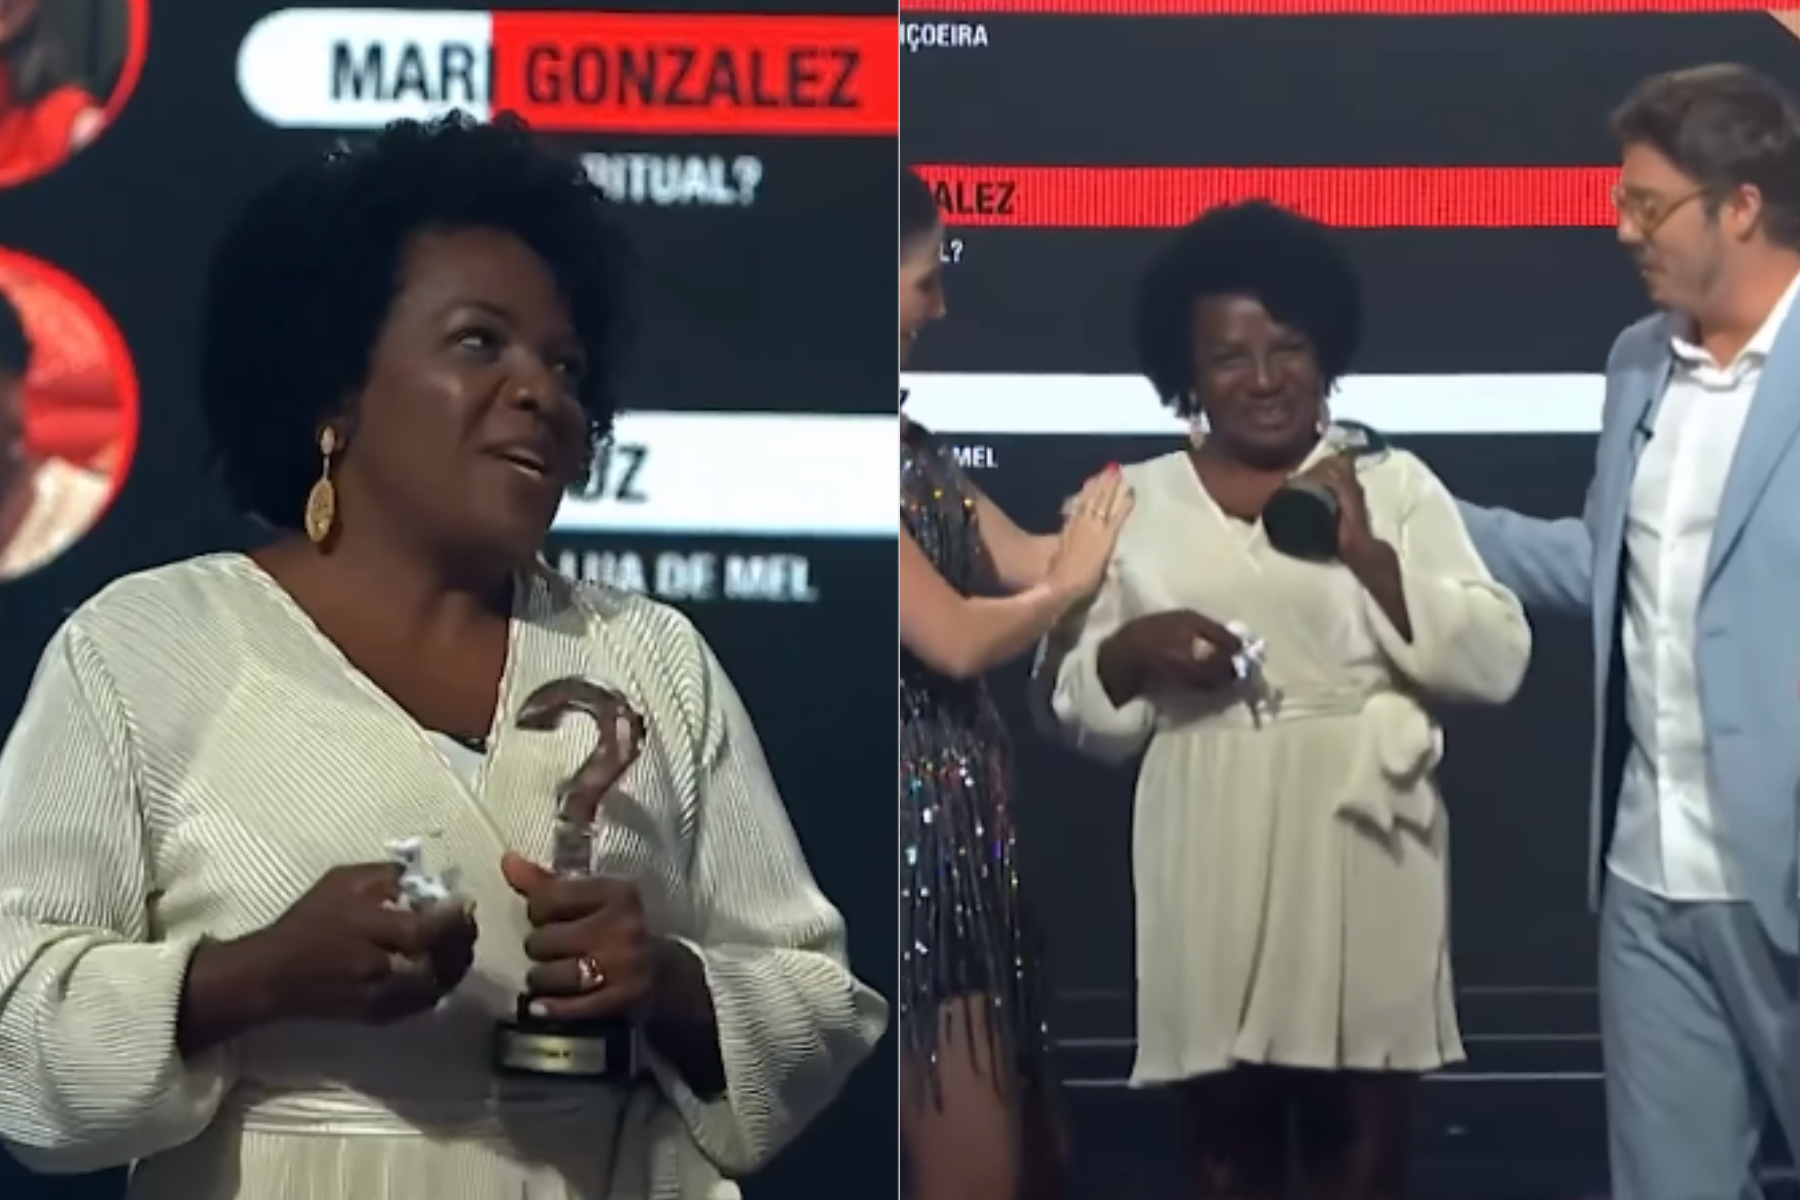 História hilária da mineira Ana Cruz, em Marataízes, conquistou o público e levou o troféu na categoria Melhor História de Viagem